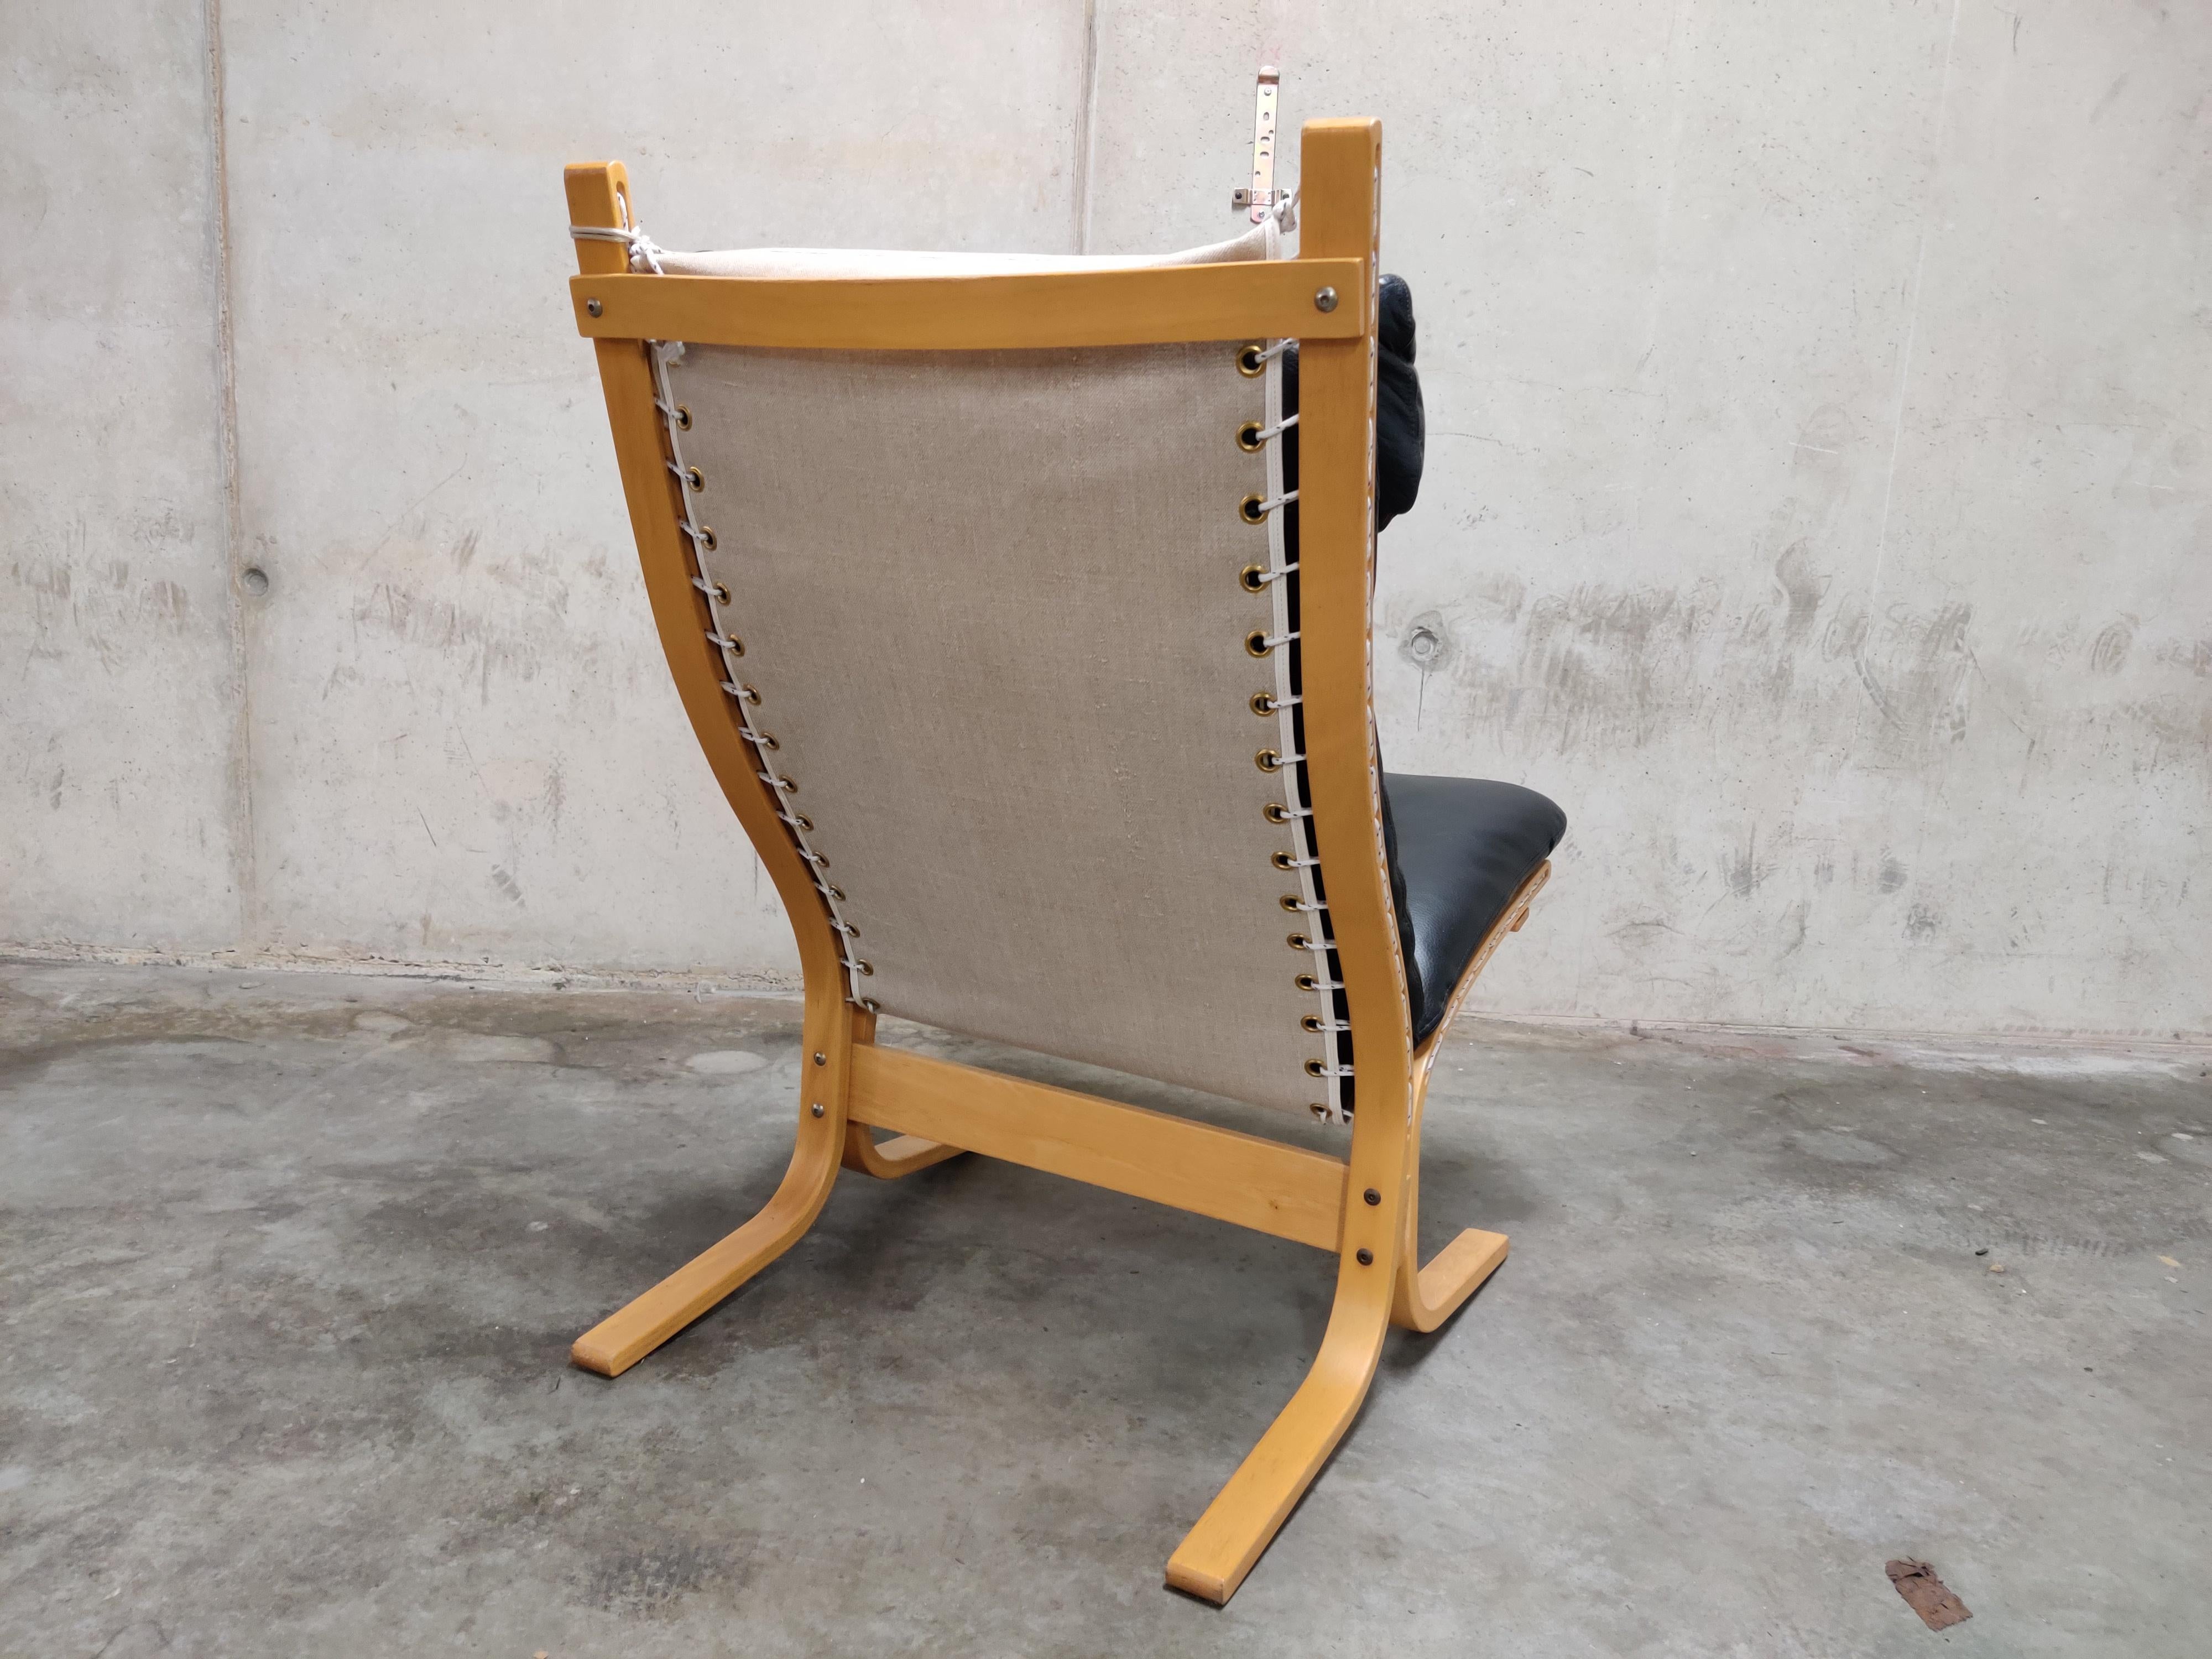 Norwegian Black Leather Siesta Chair by Ingmar Relling for Westnofa, 1970s